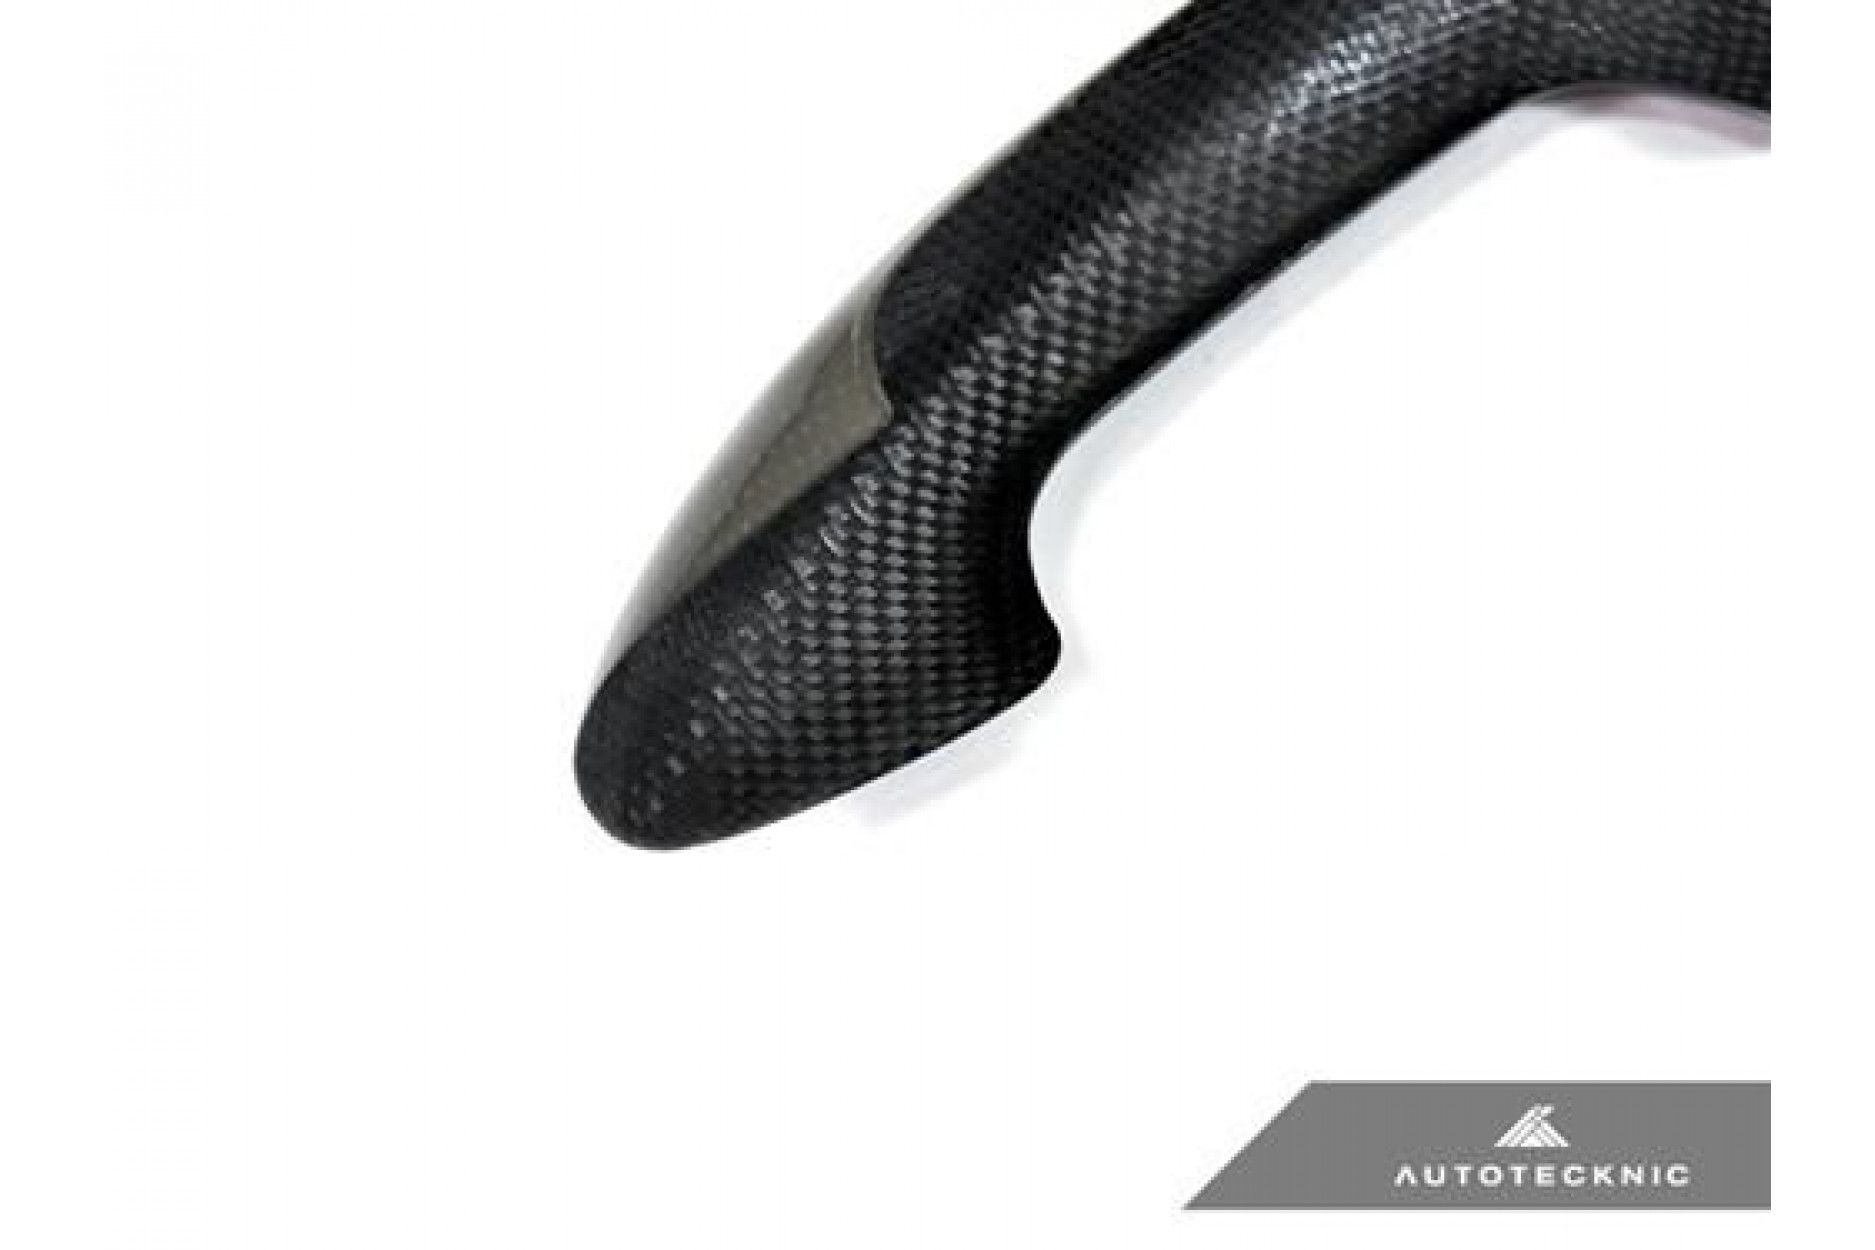 AutoTecknic Dry Carbon Türgriffverkleidunge für BMW F10 5er